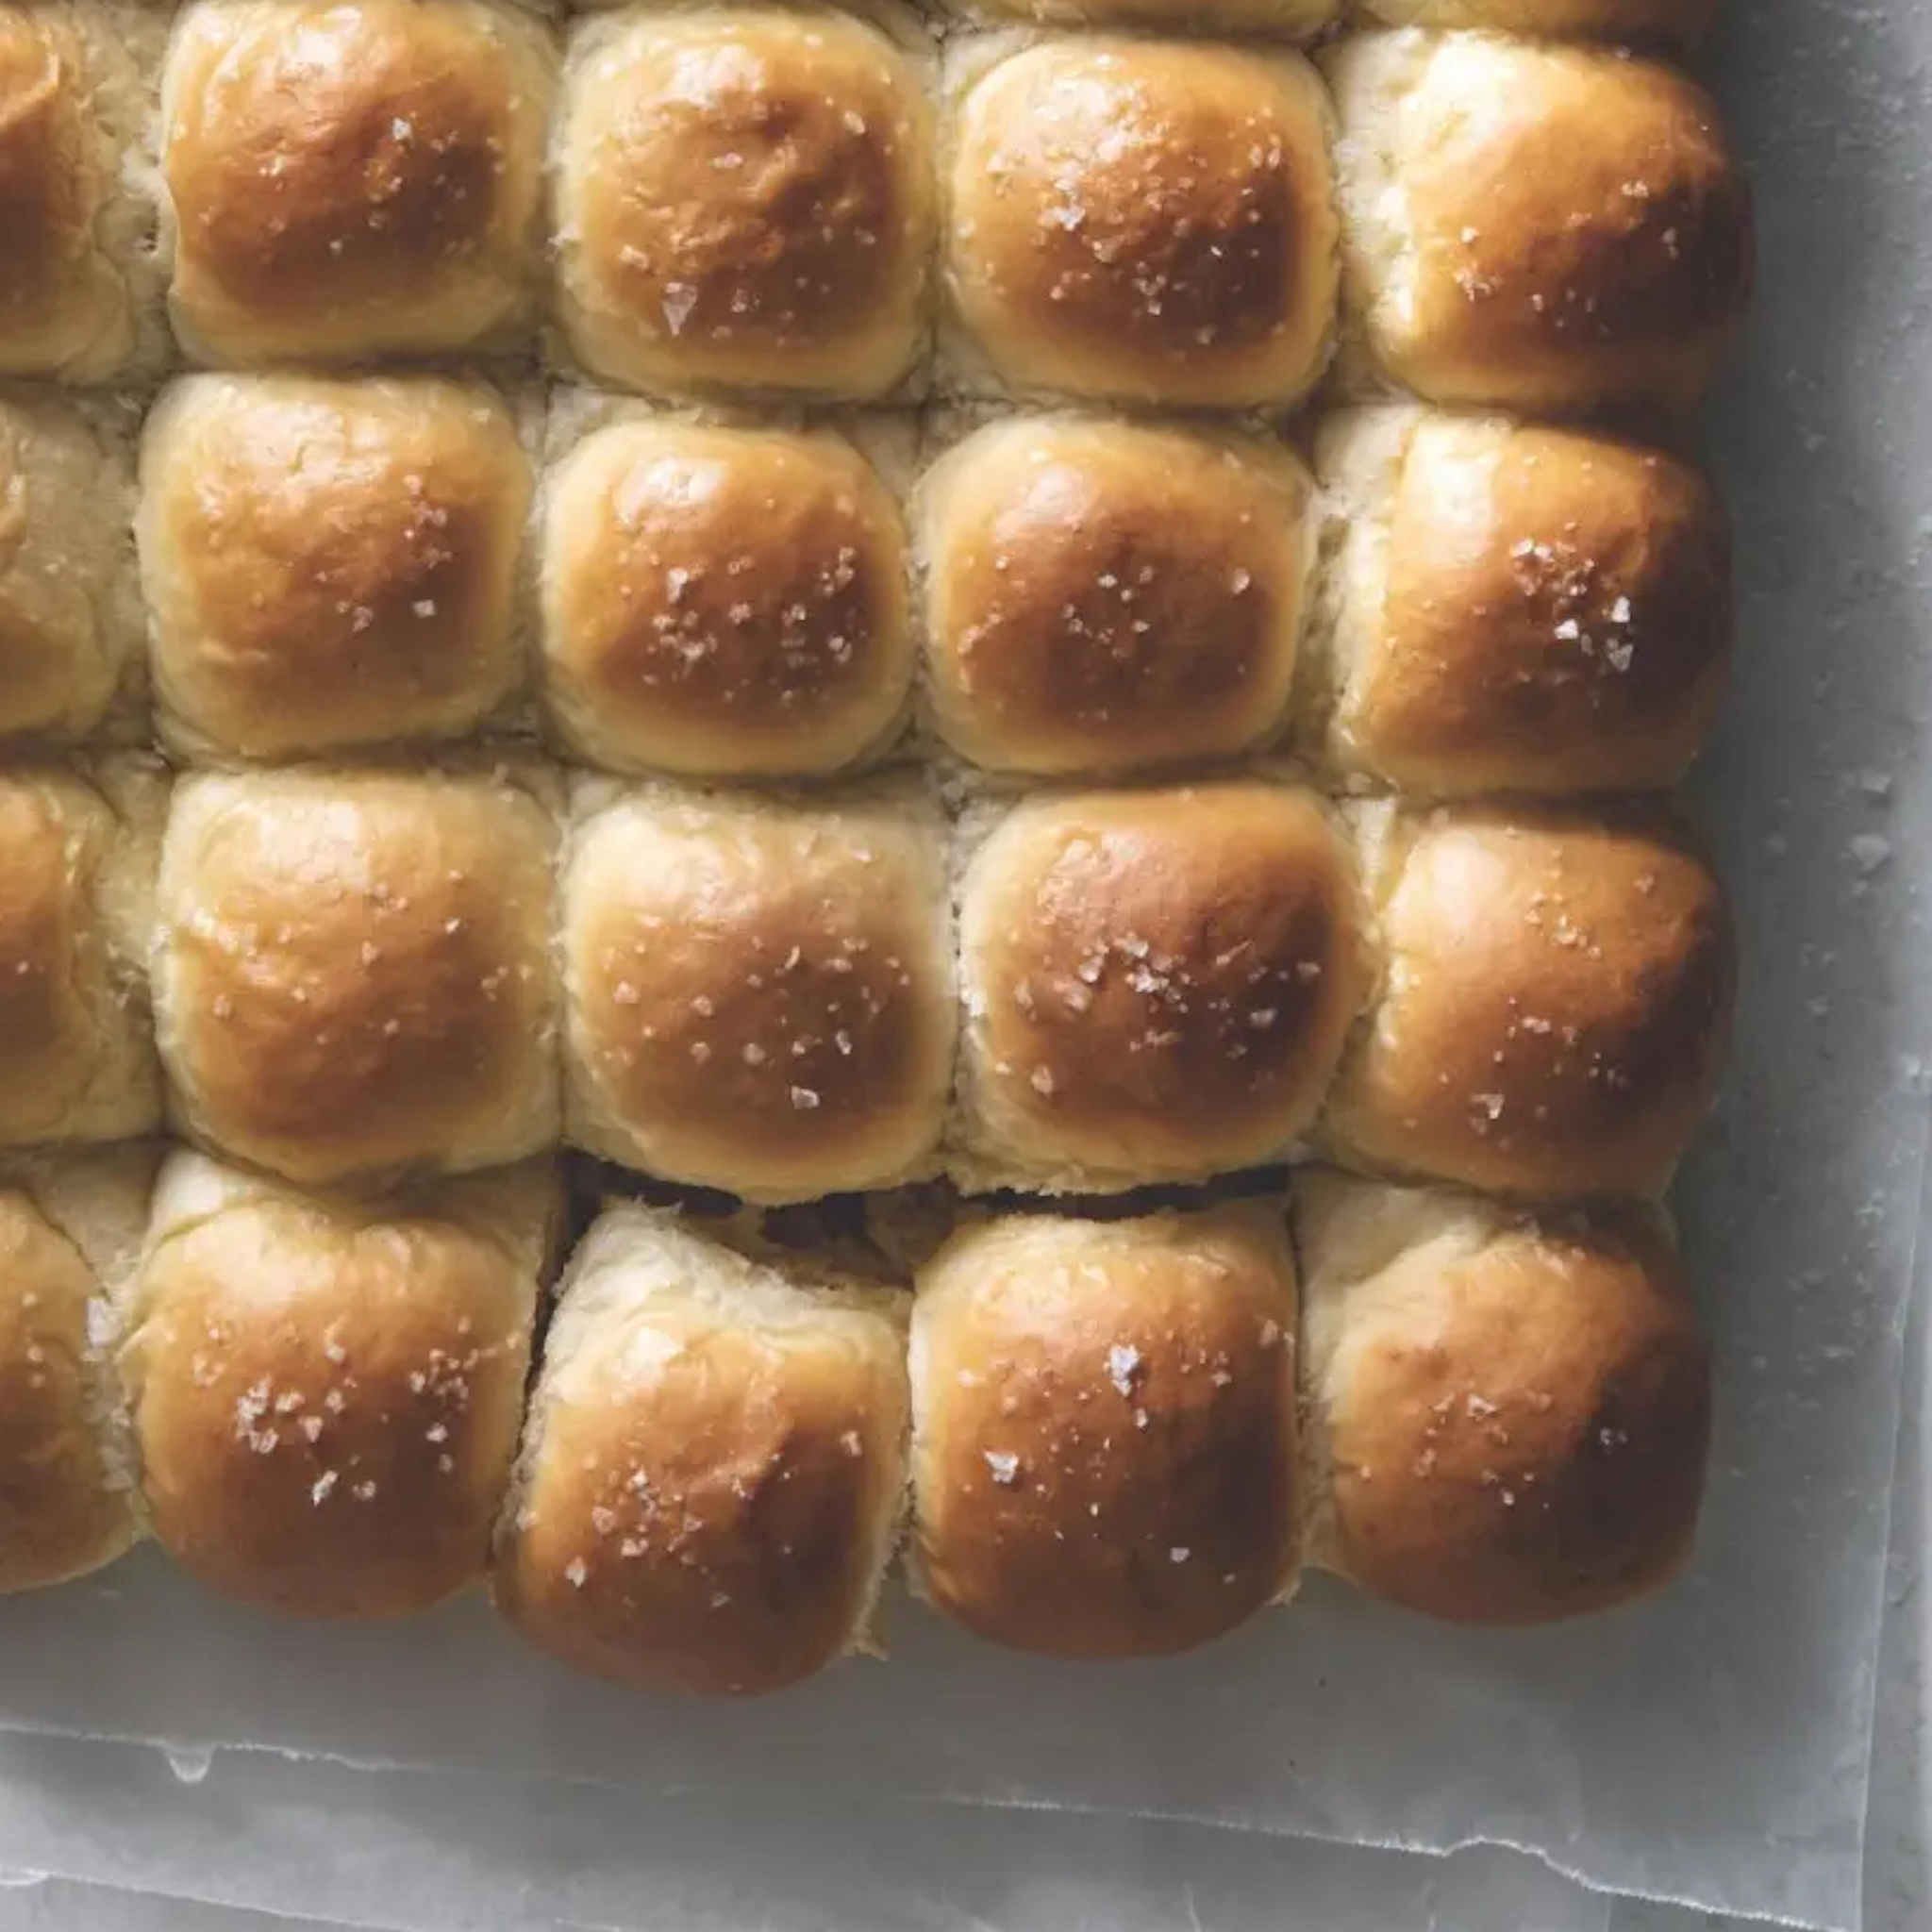 Freshly-baked dinner rolls on paper. 